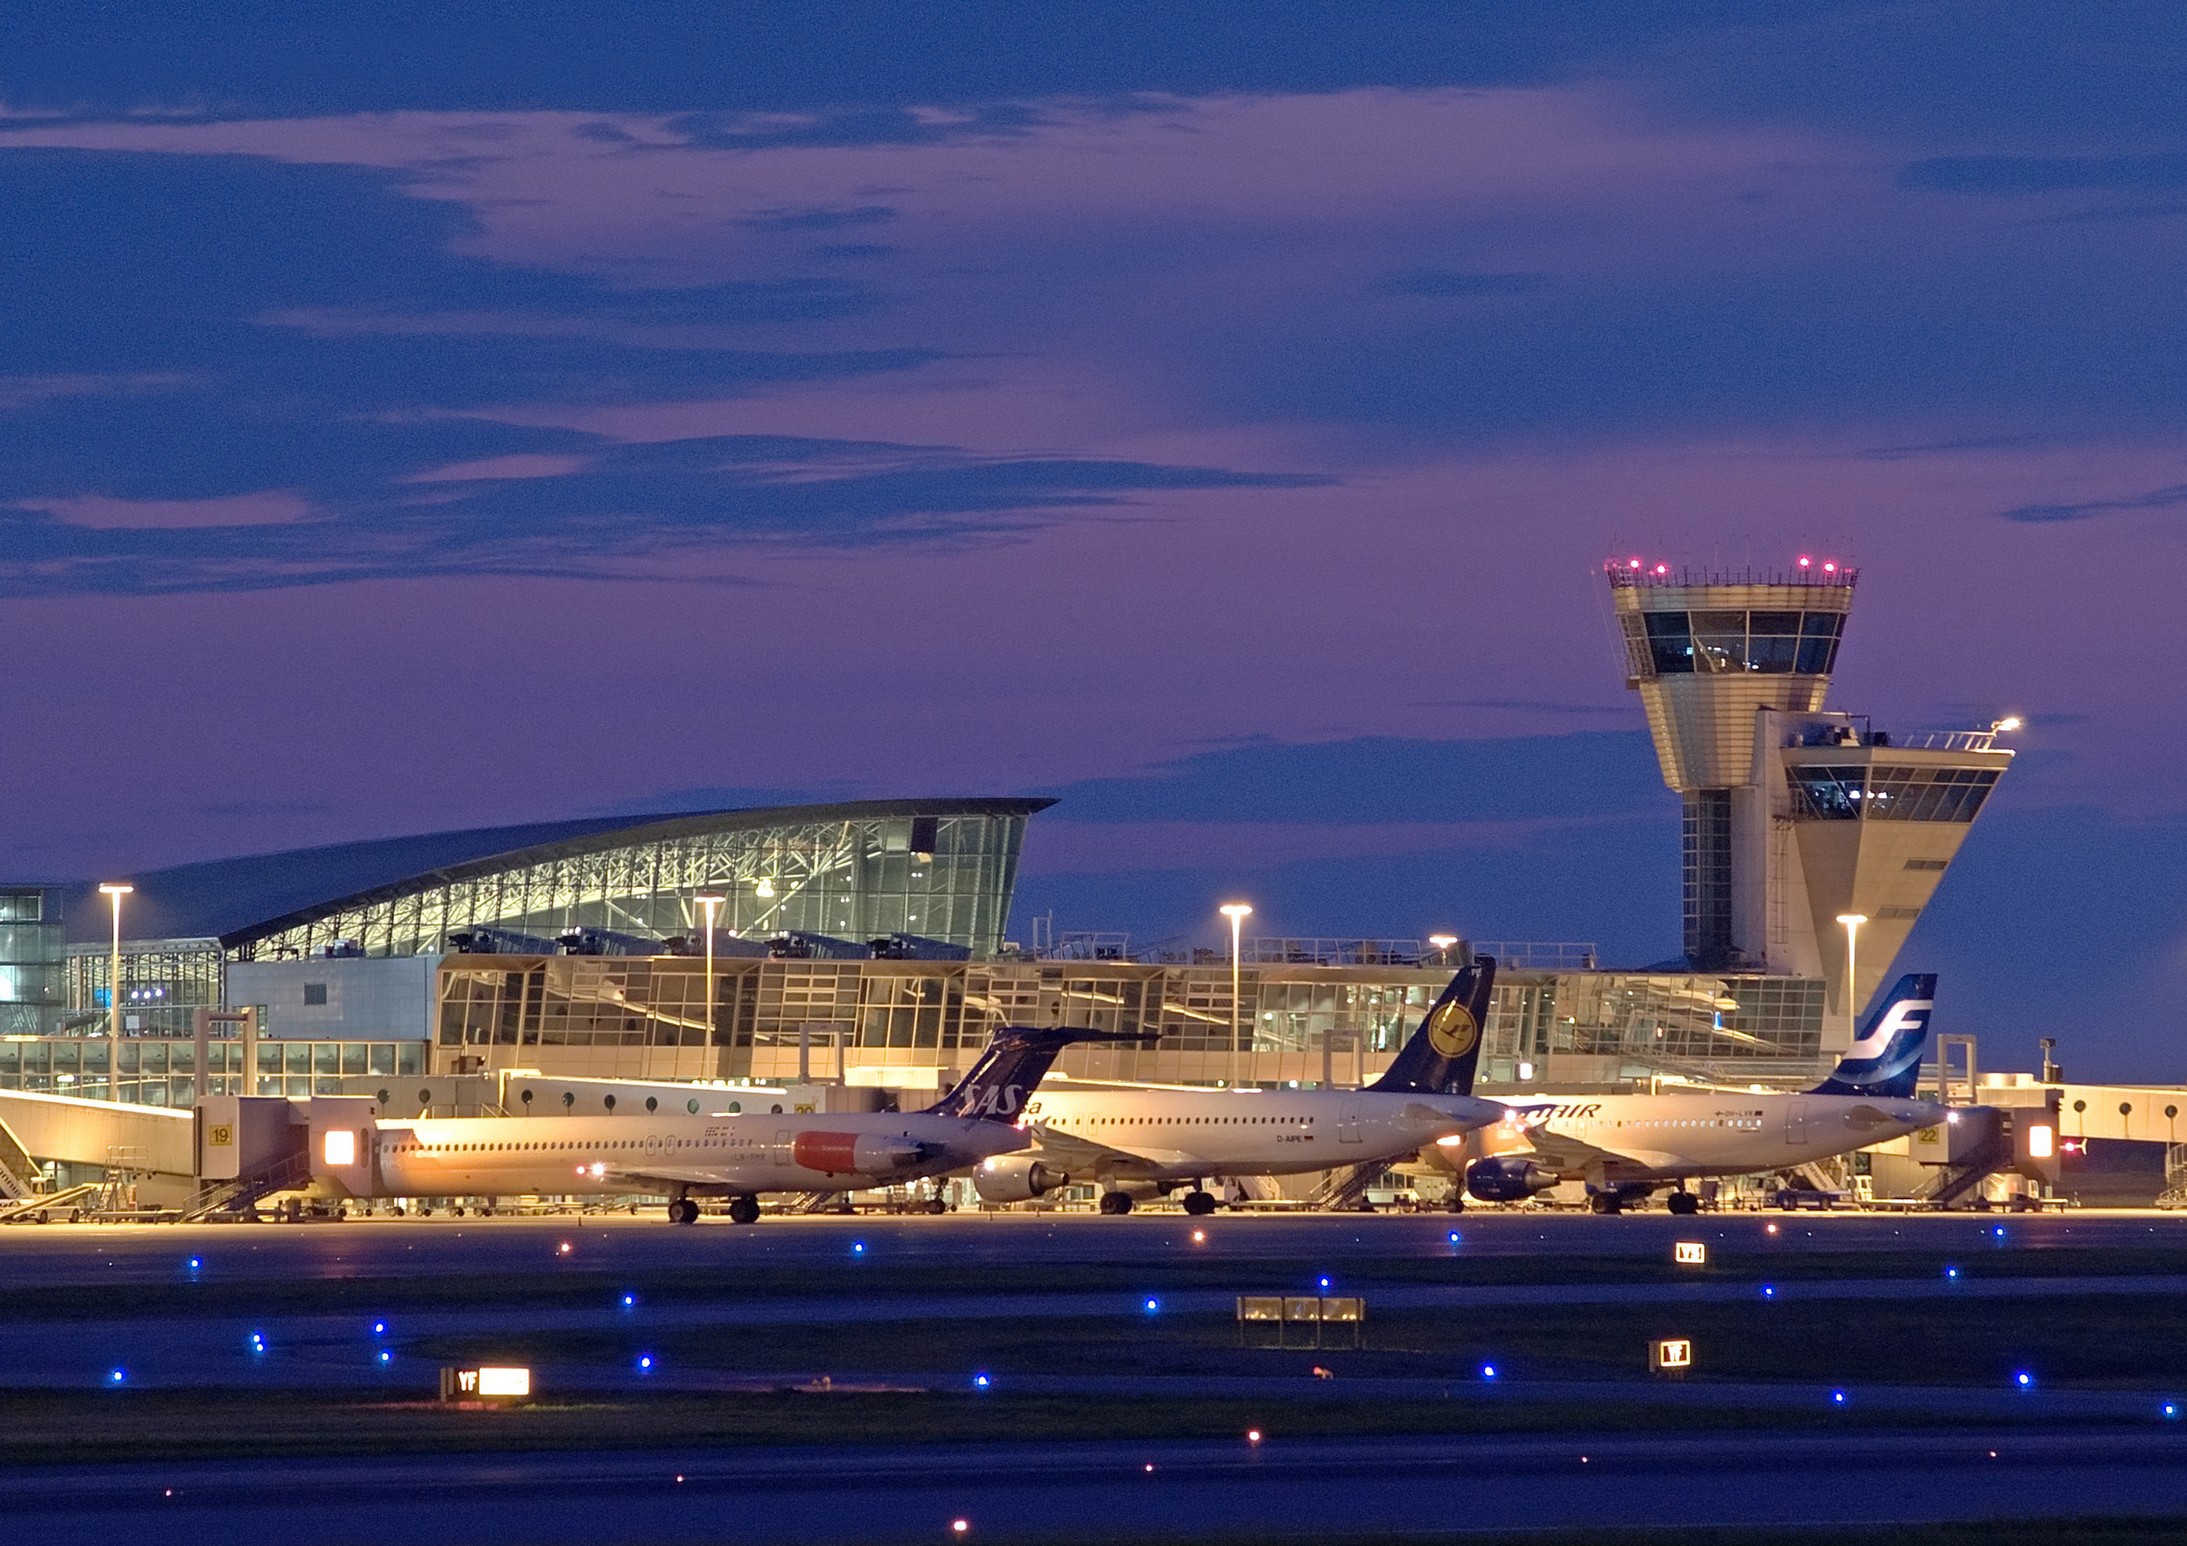 Helsinki airport got prestigious reward: “Best Airport in Northern Europe”. Part 1